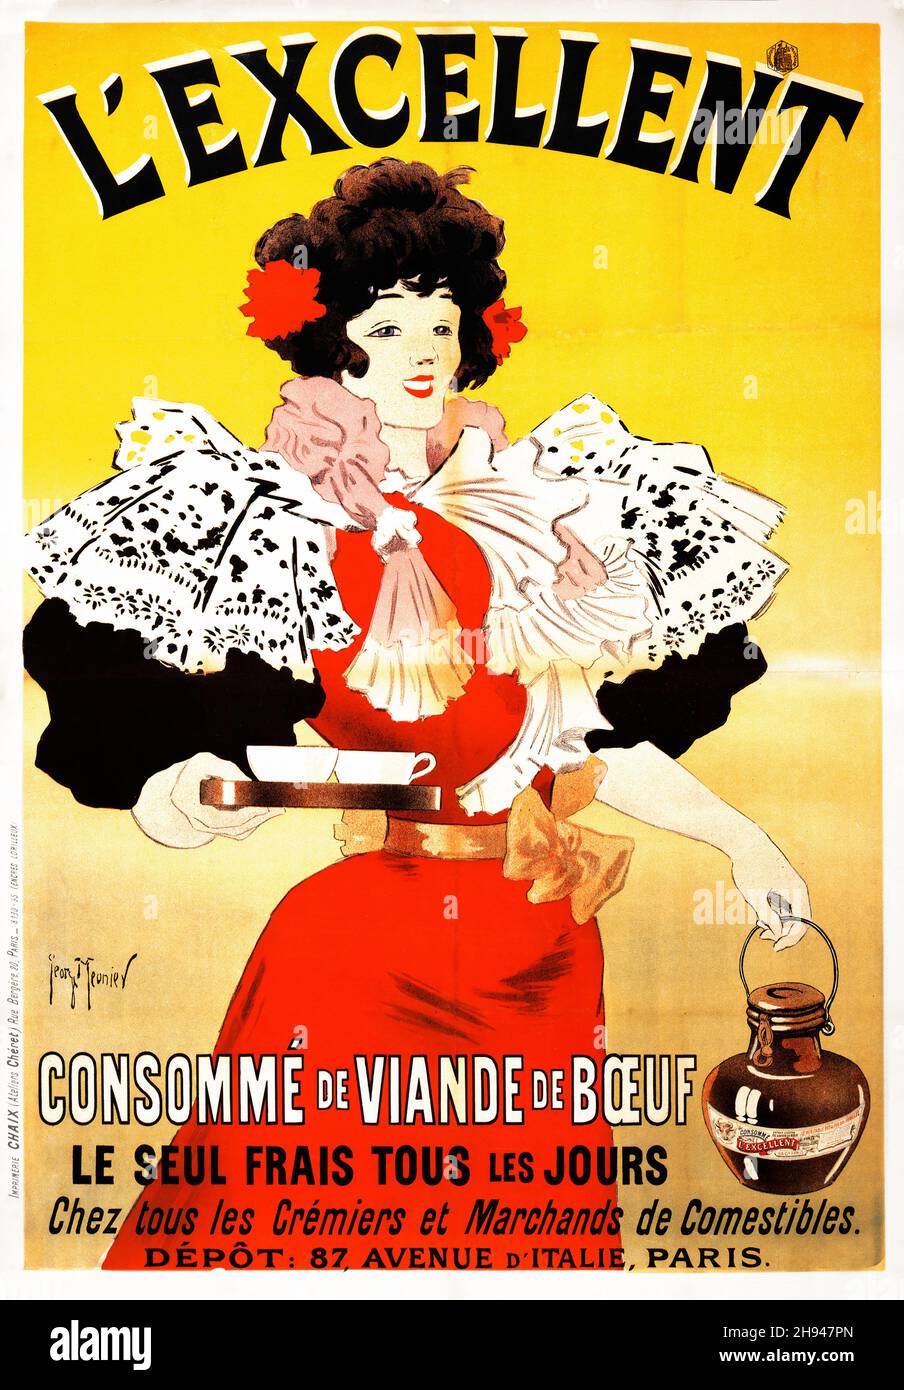 L'excellent, consommé de viande de bœuf by Georges Meunier (1869-1942). Paris : Imprimerie Chaix (Ateliers Chéret), Rue Bergère, 20, 1895. Stock Photo